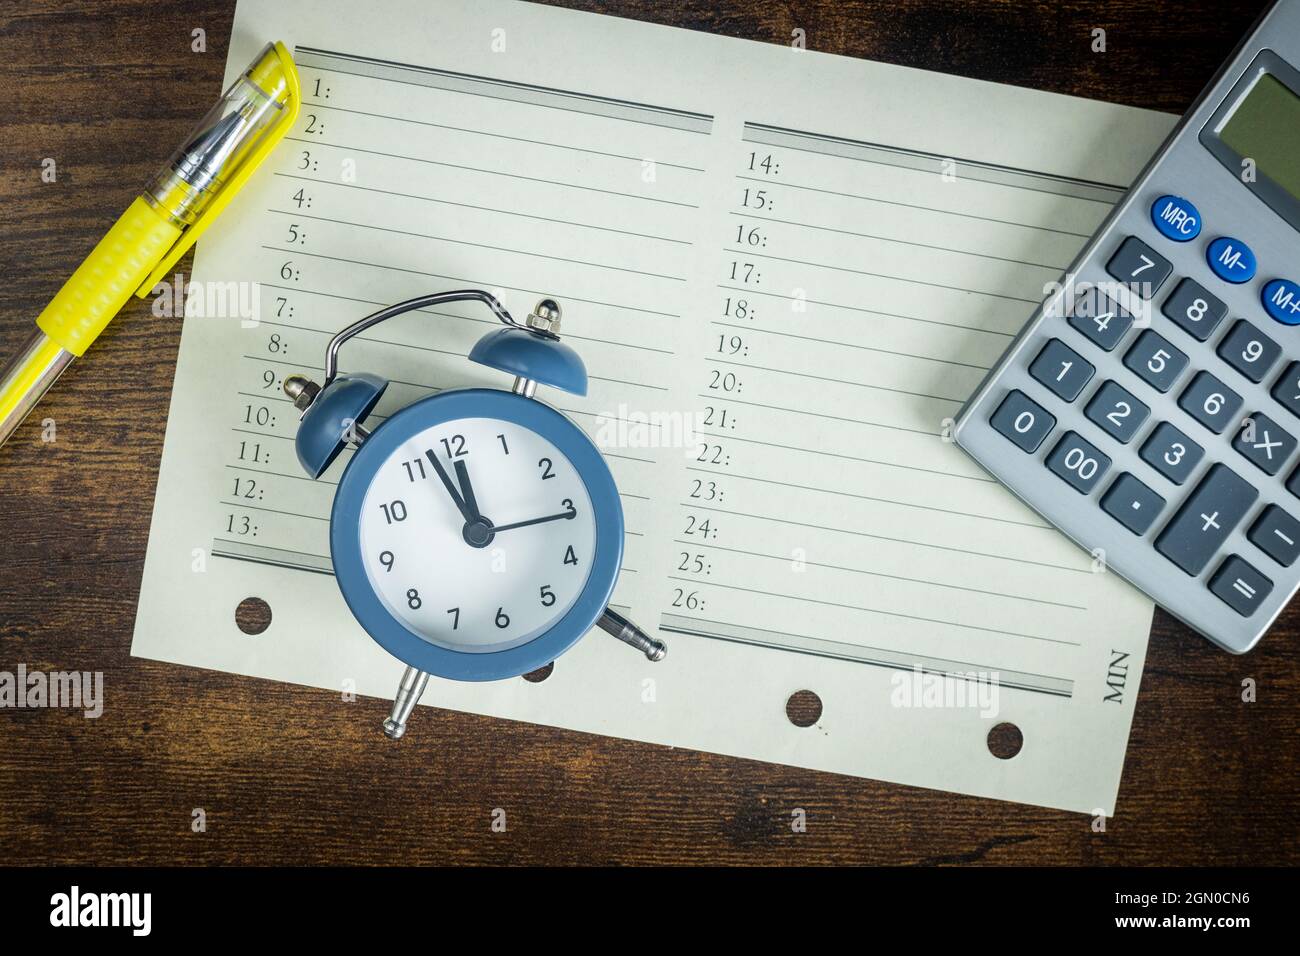 Organizador de oficina con una calculadora y un reloj despertador  configurado para cinco a doce, el concepto de resúmenes y una programación  de tareas bajo presión de tiempo Fotografía de stock -